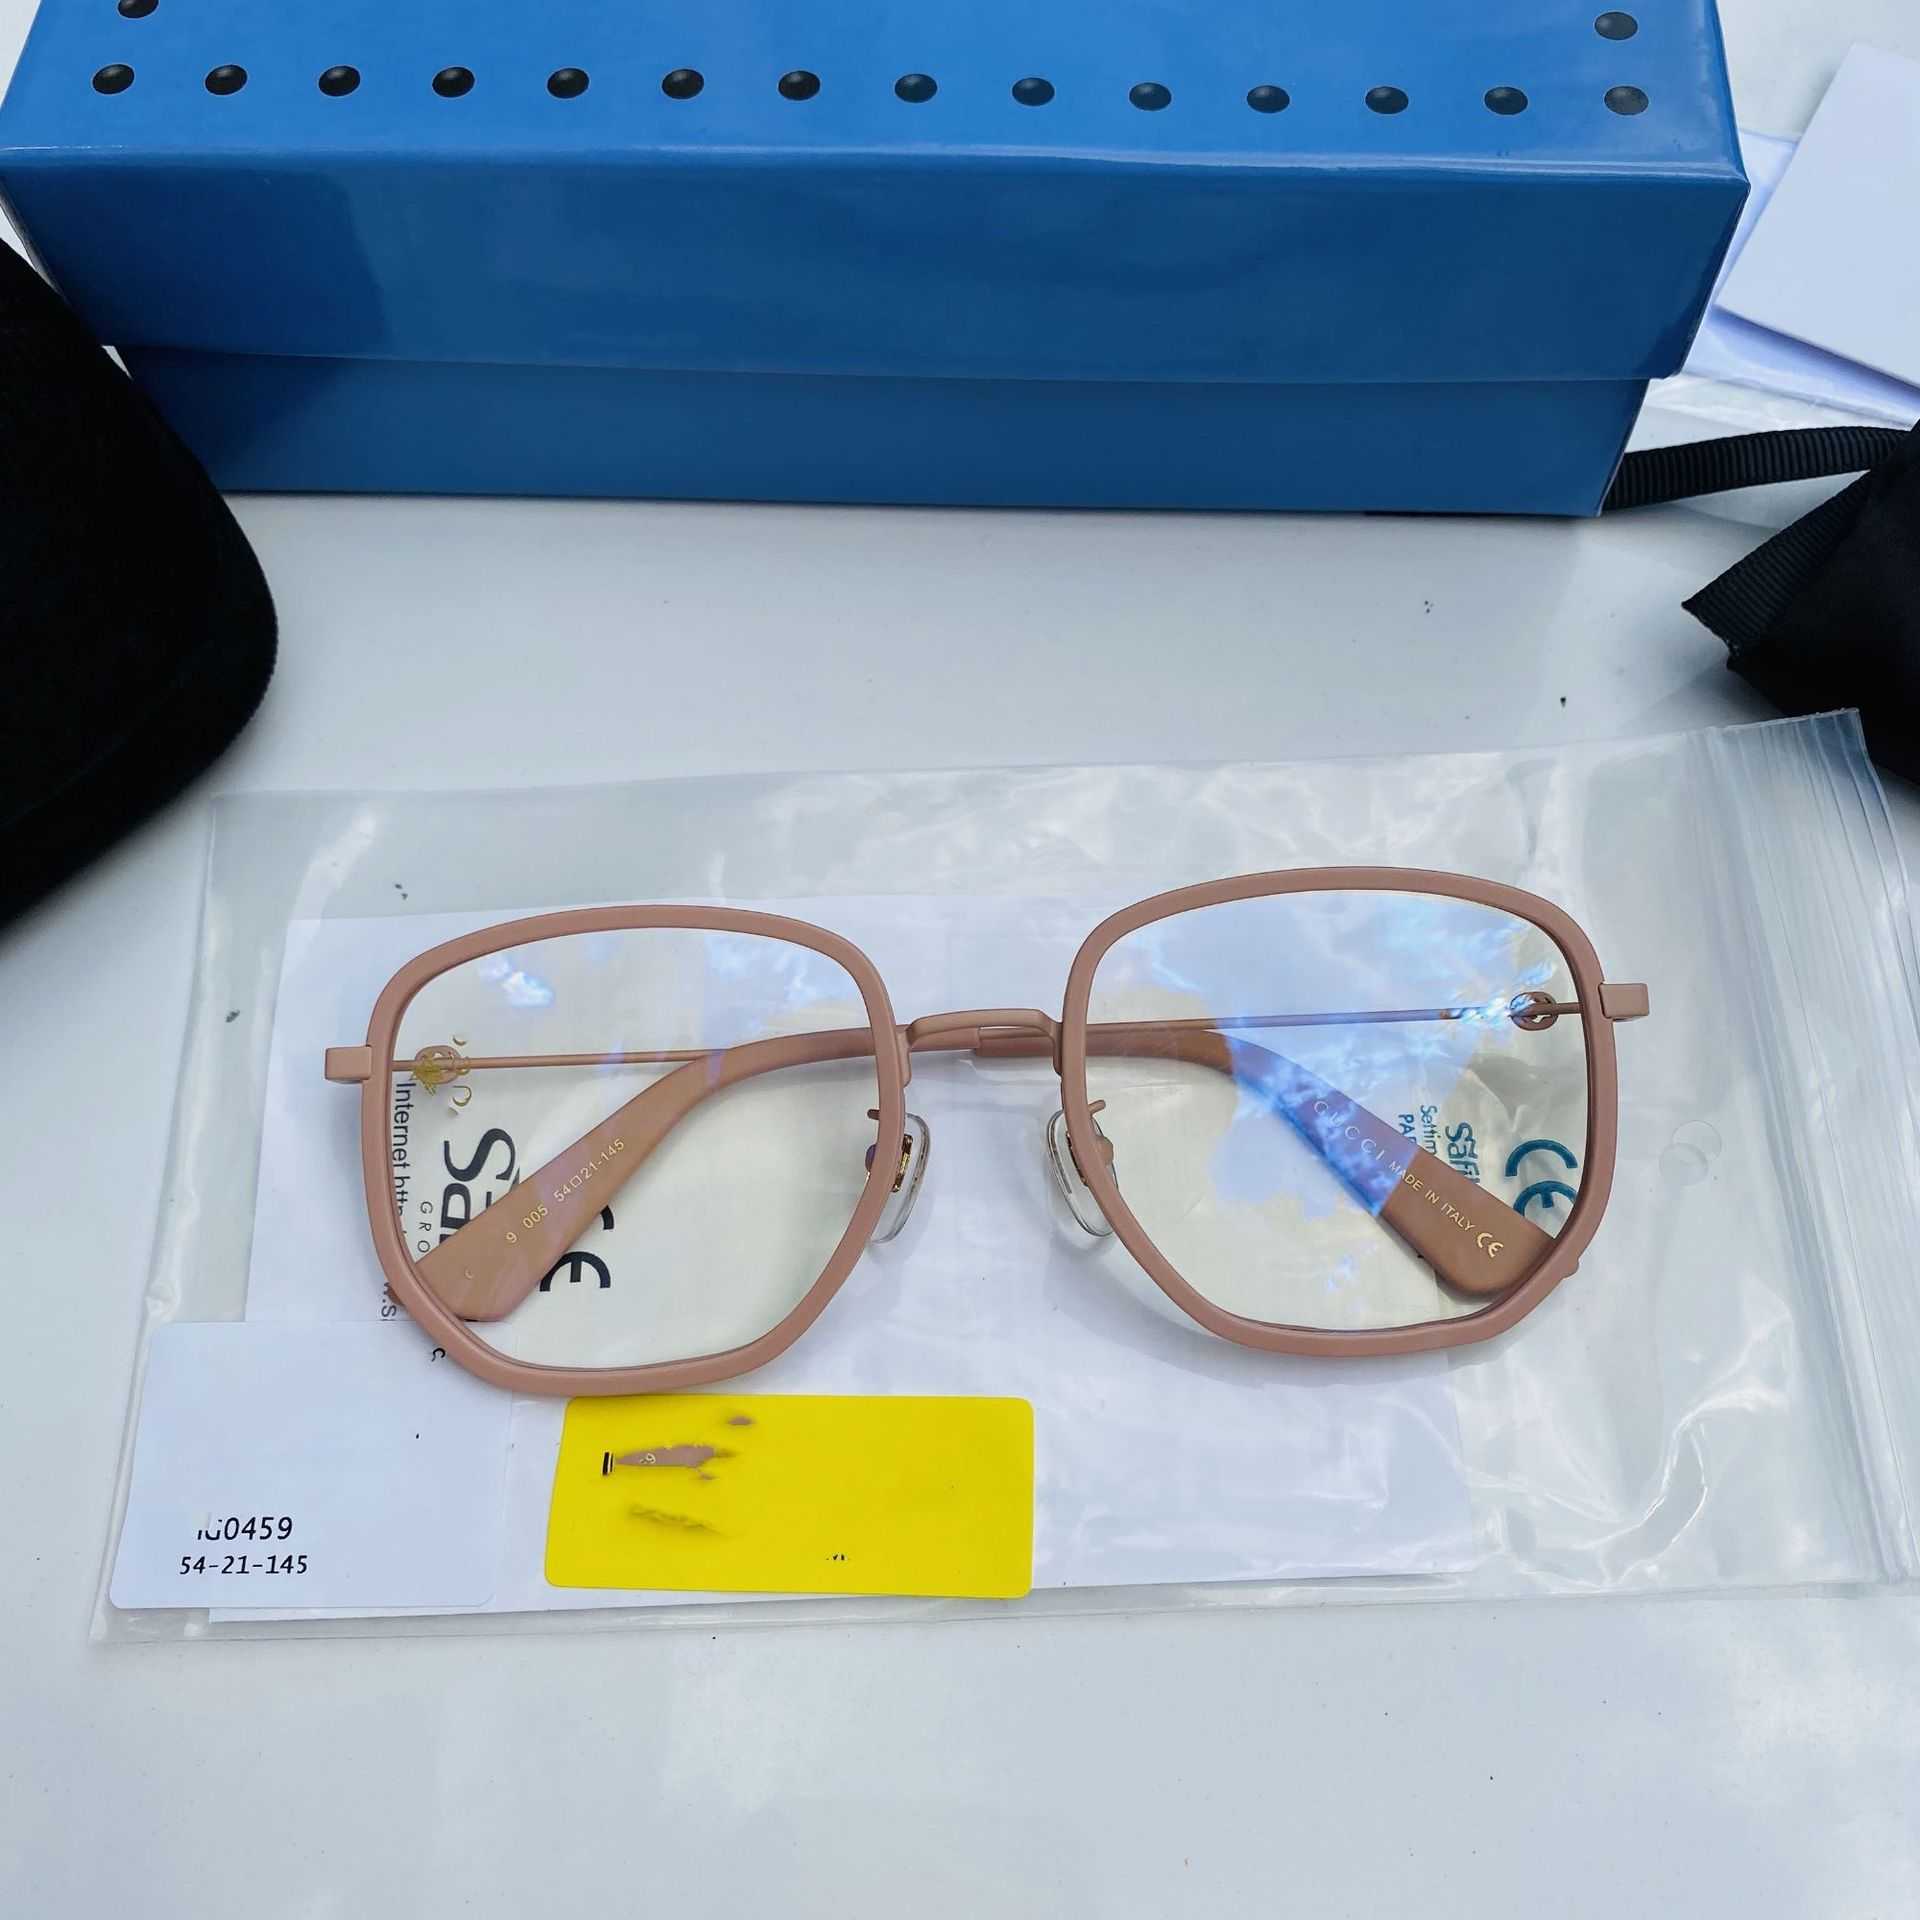 2023 Nowe luksusowe okulary przeciwsłoneczne Nowy płaski obiektyw GG0459 ma nieregularną ramę i jest popularny. Zwykła twarz może sparować z krótkowzroczną małą pszczołą